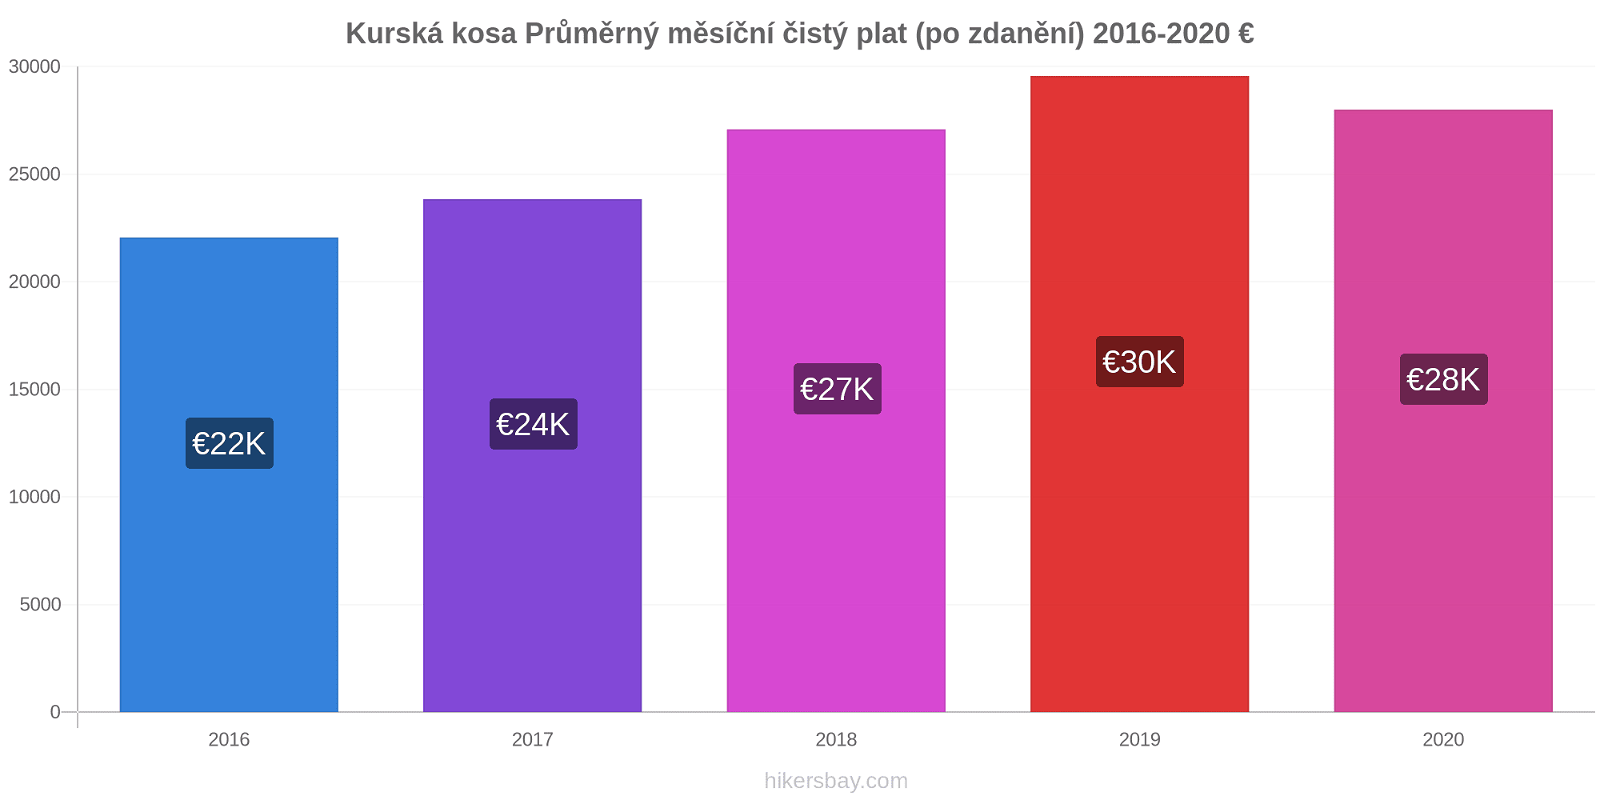 Kurská kosa změny cen Průměrný měsíční čistý plat (po zdanění) hikersbay.com